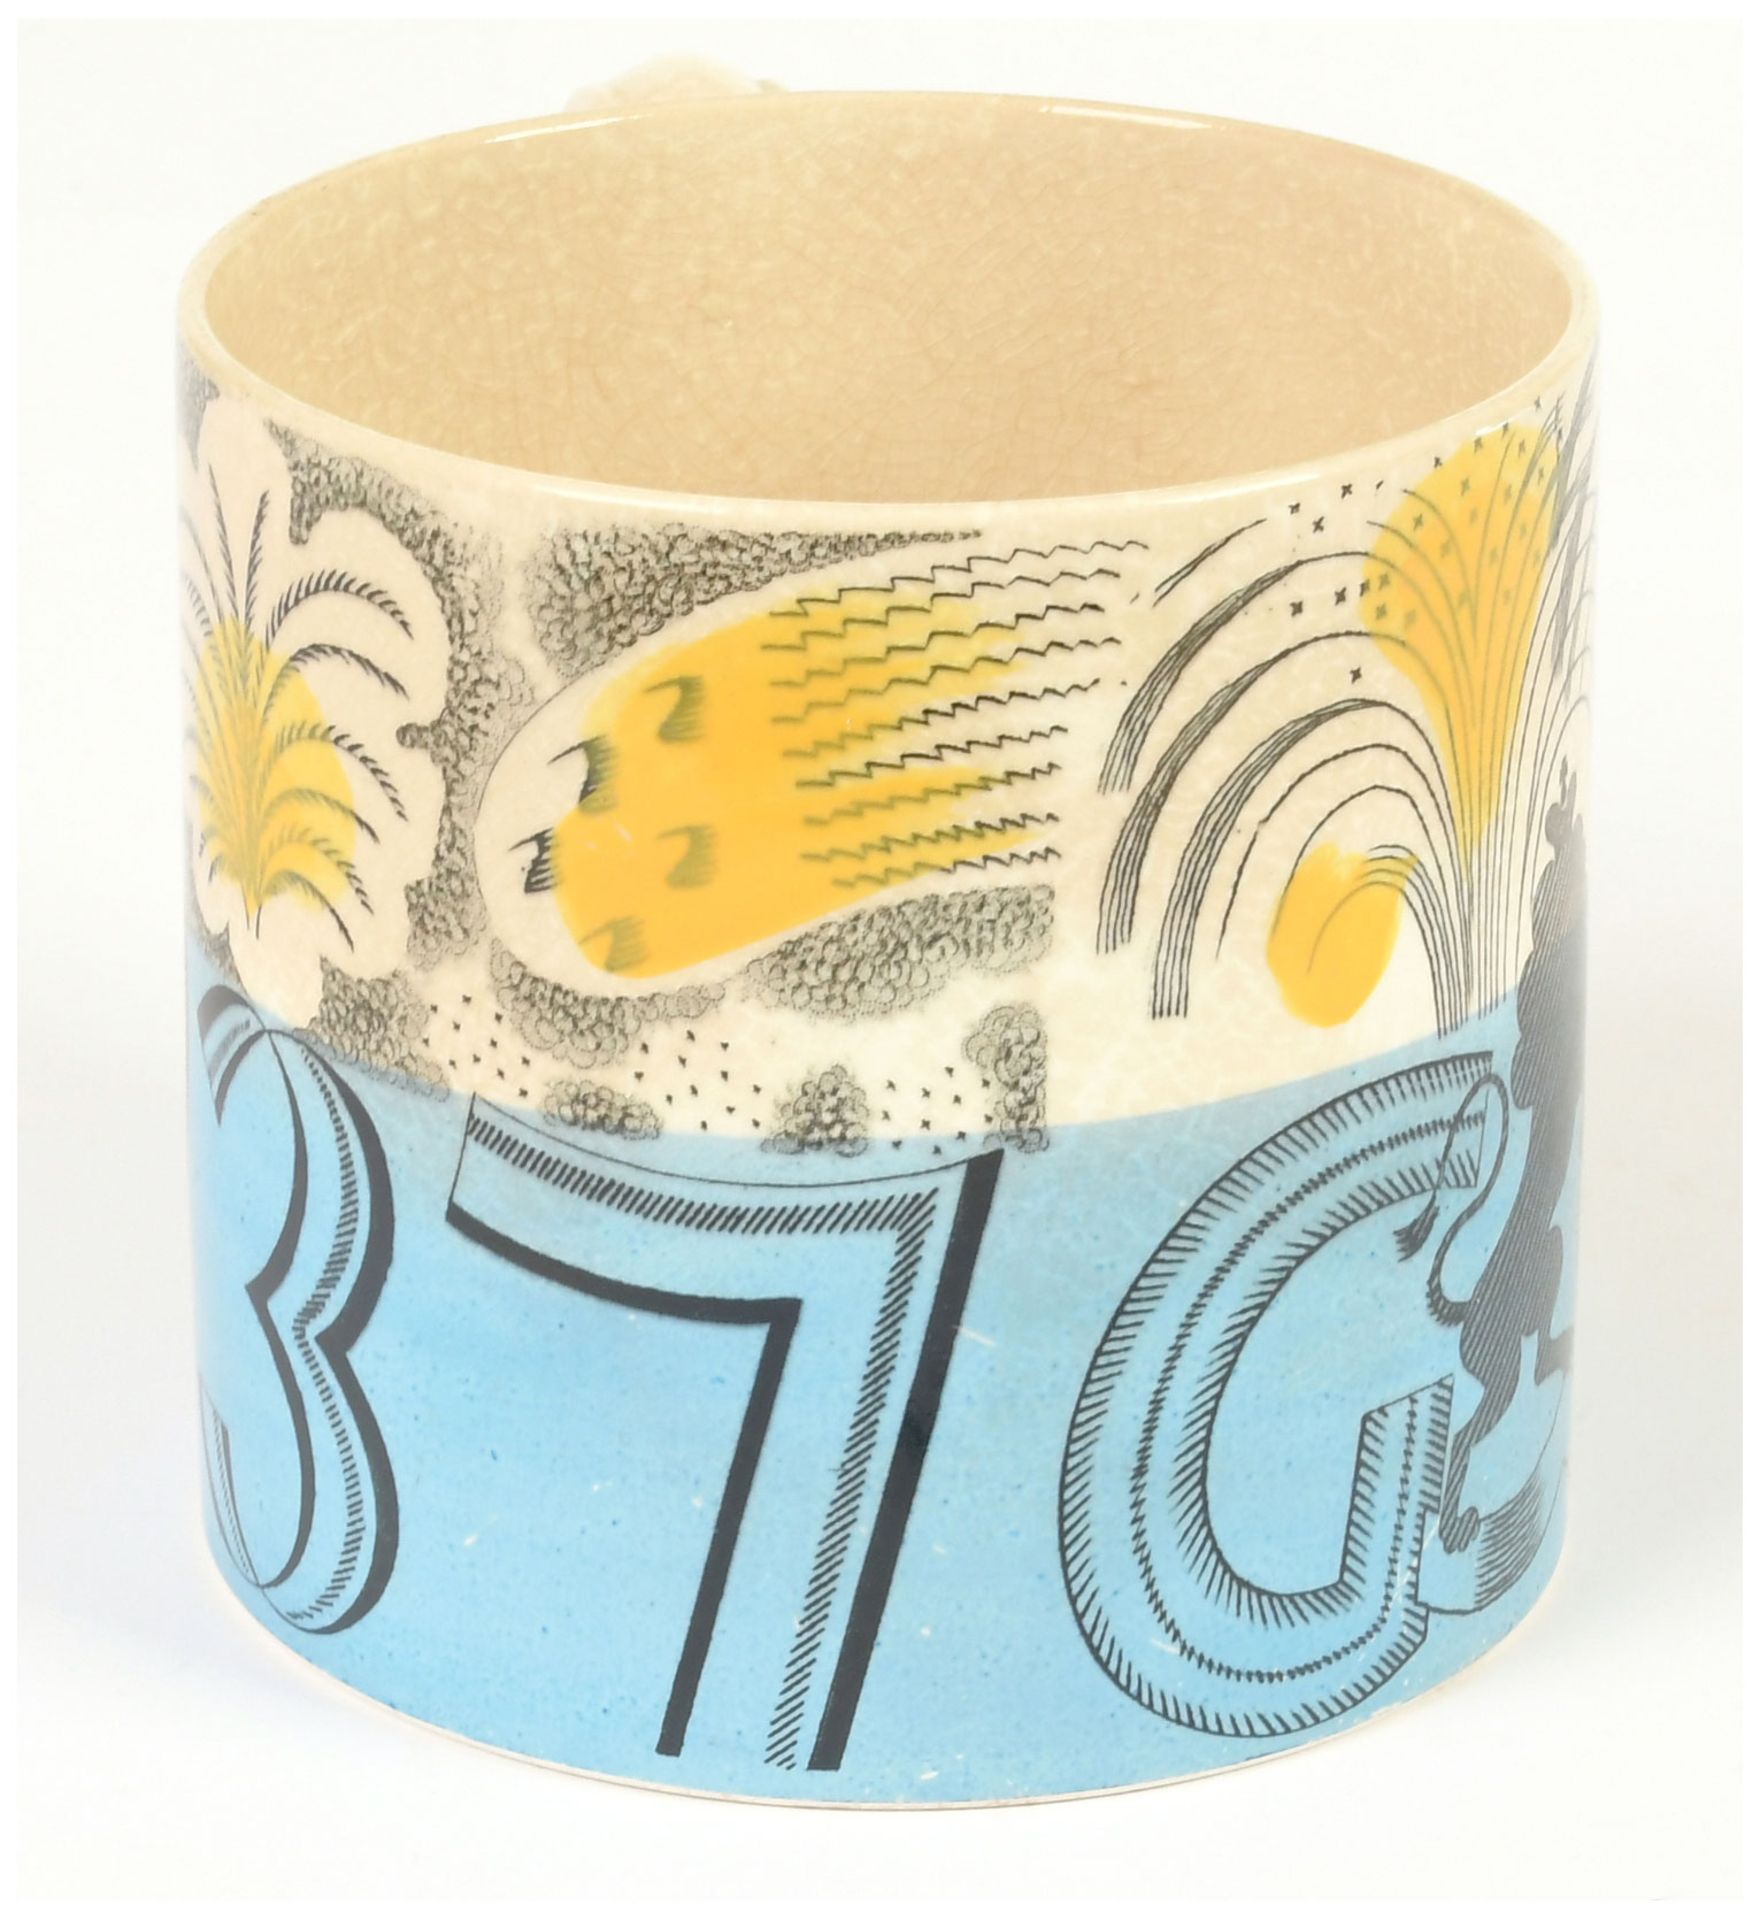 Wedgewood commemorative mug designed by Eric - Image 4 of 7